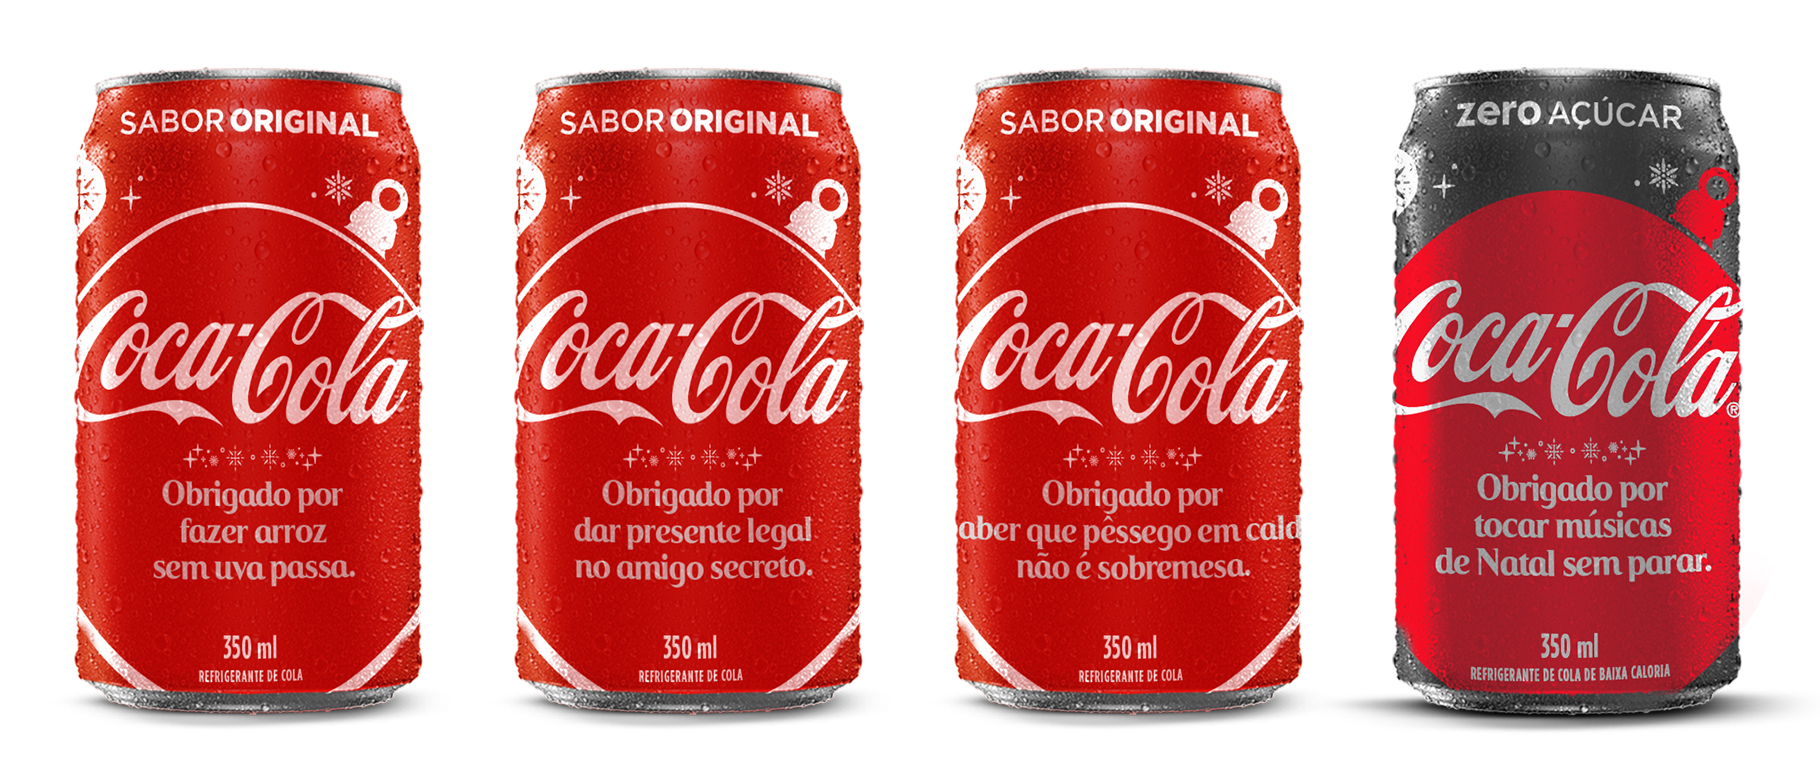 Coca-Cola incentiva o reconhecimento de pequenos gestos para o Natal - ABIR